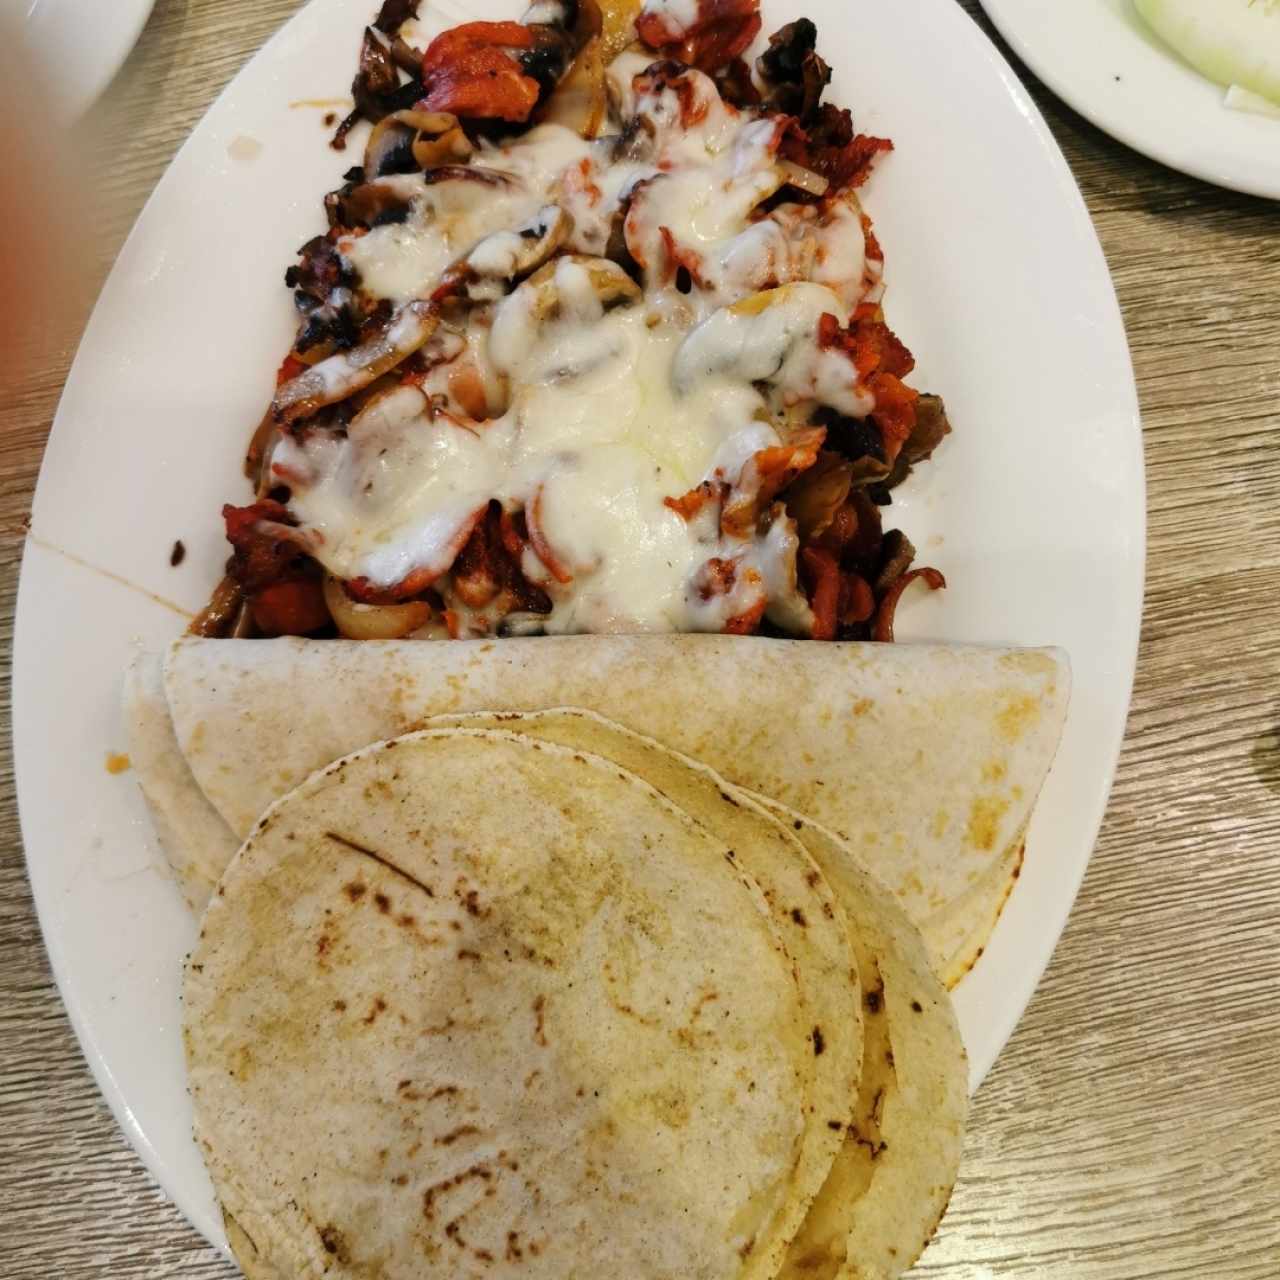 Taco Tarasco